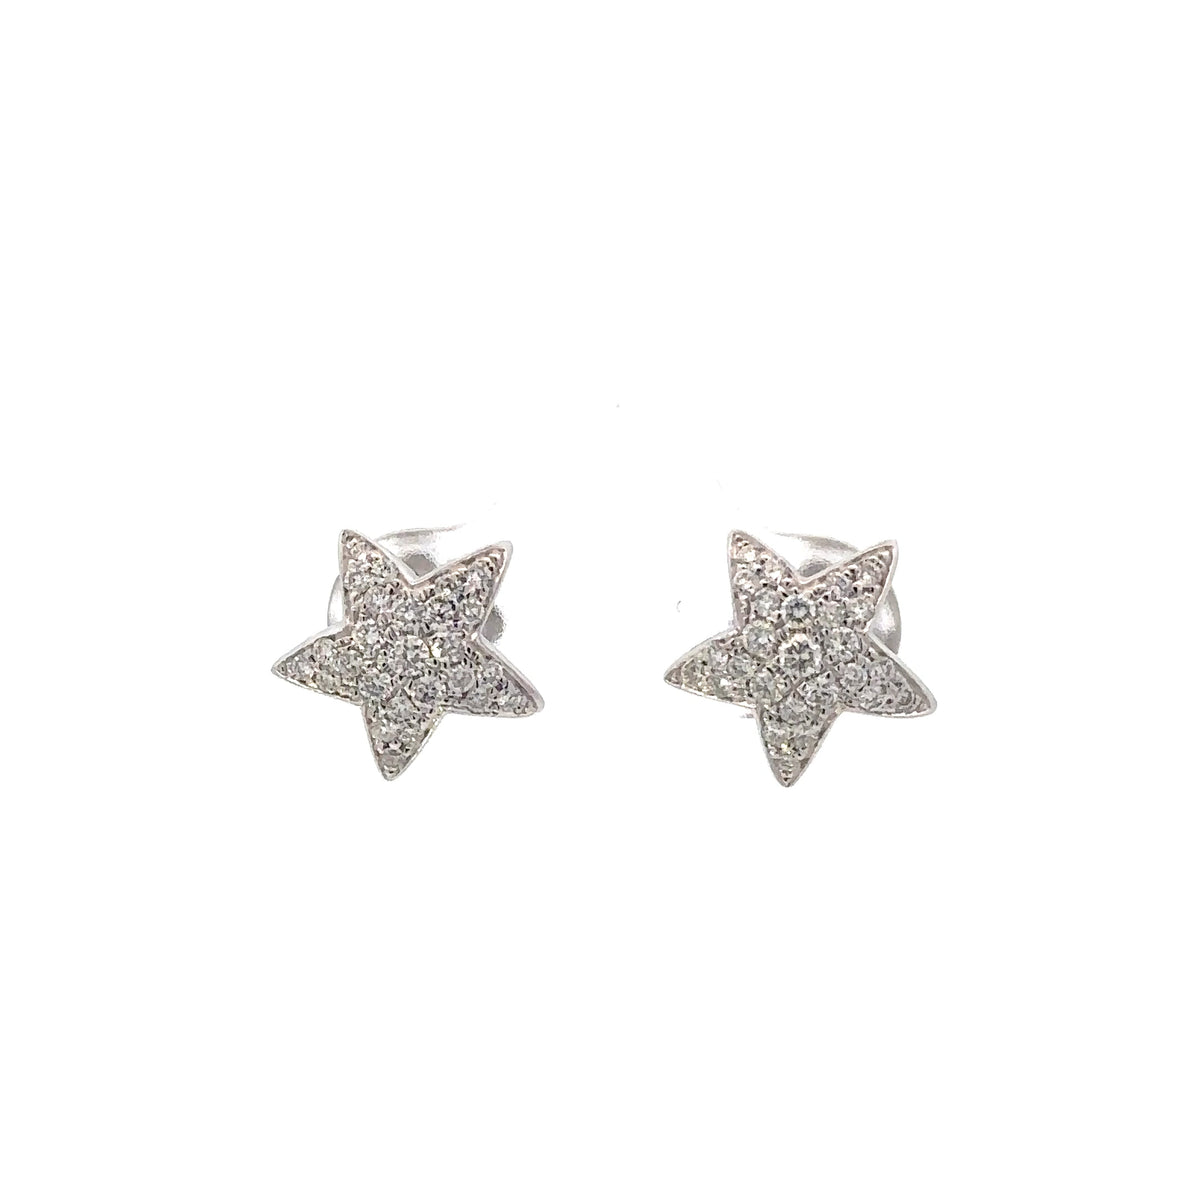 Elegant Diamond Star Stud Earrings in 18K White Gold